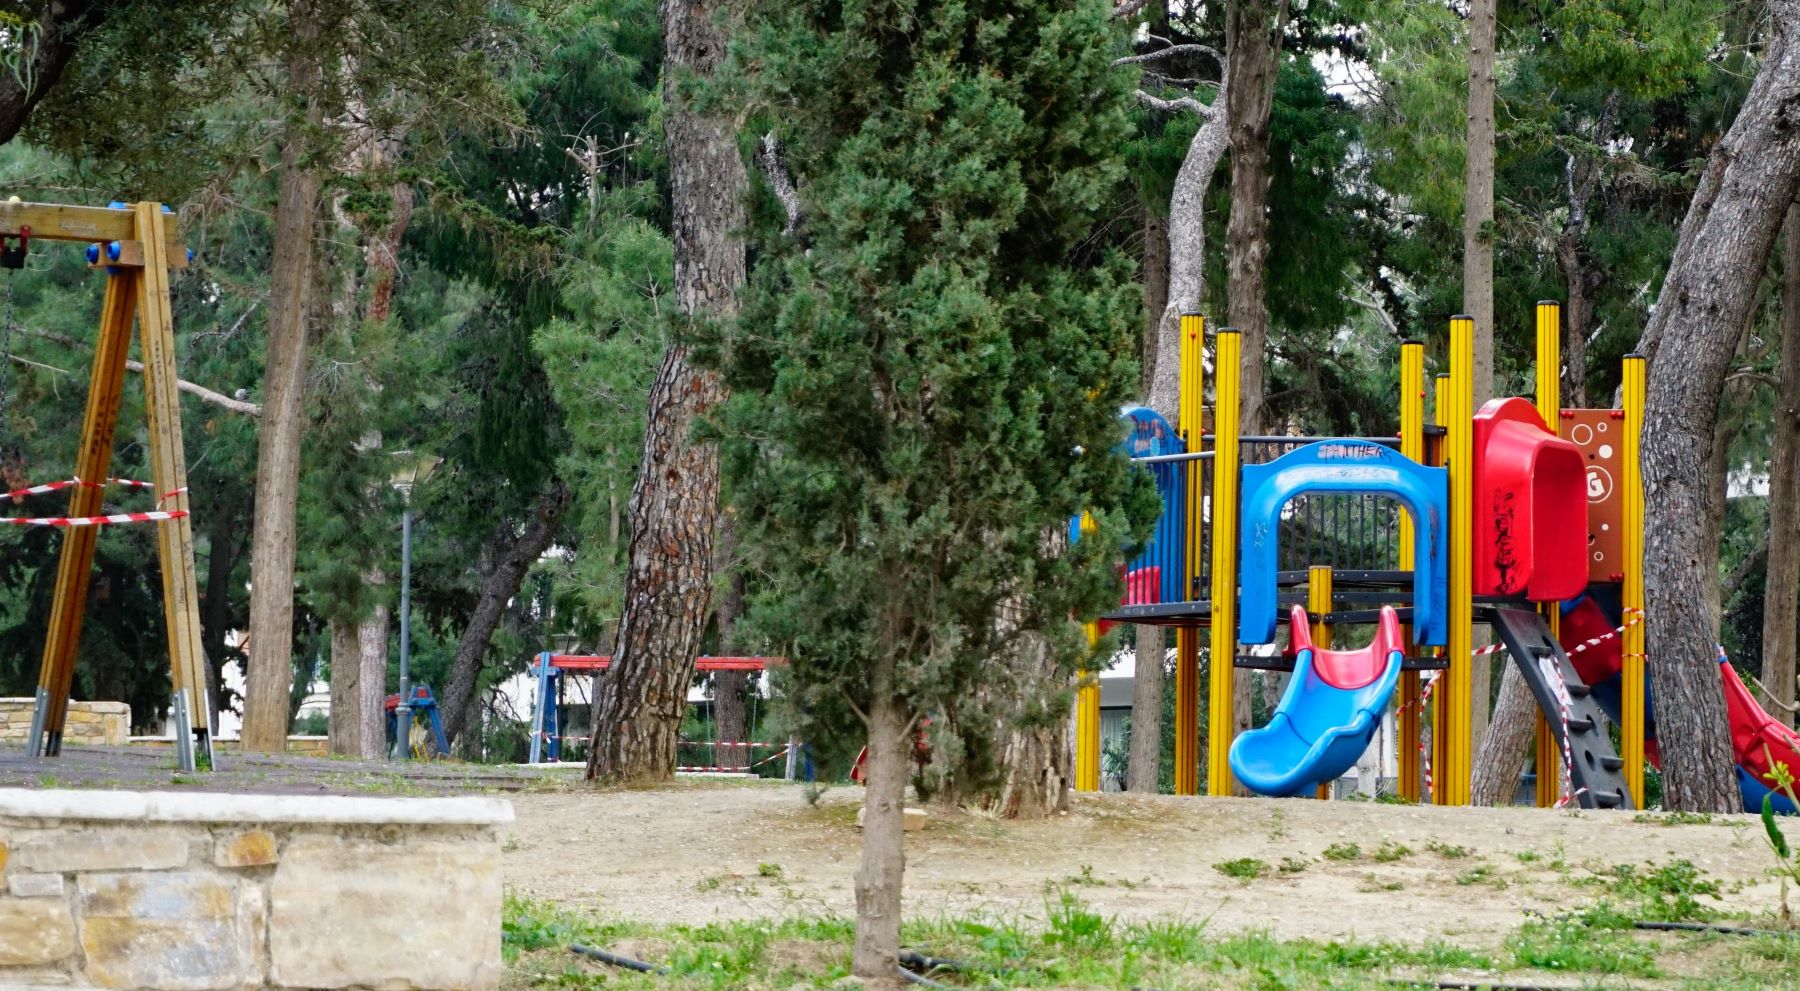 Δήμος Αθηναίων: Προσωρινό λουκέτο σε 12 παιδικές χαρές για την ασφάλεια των παιδιών